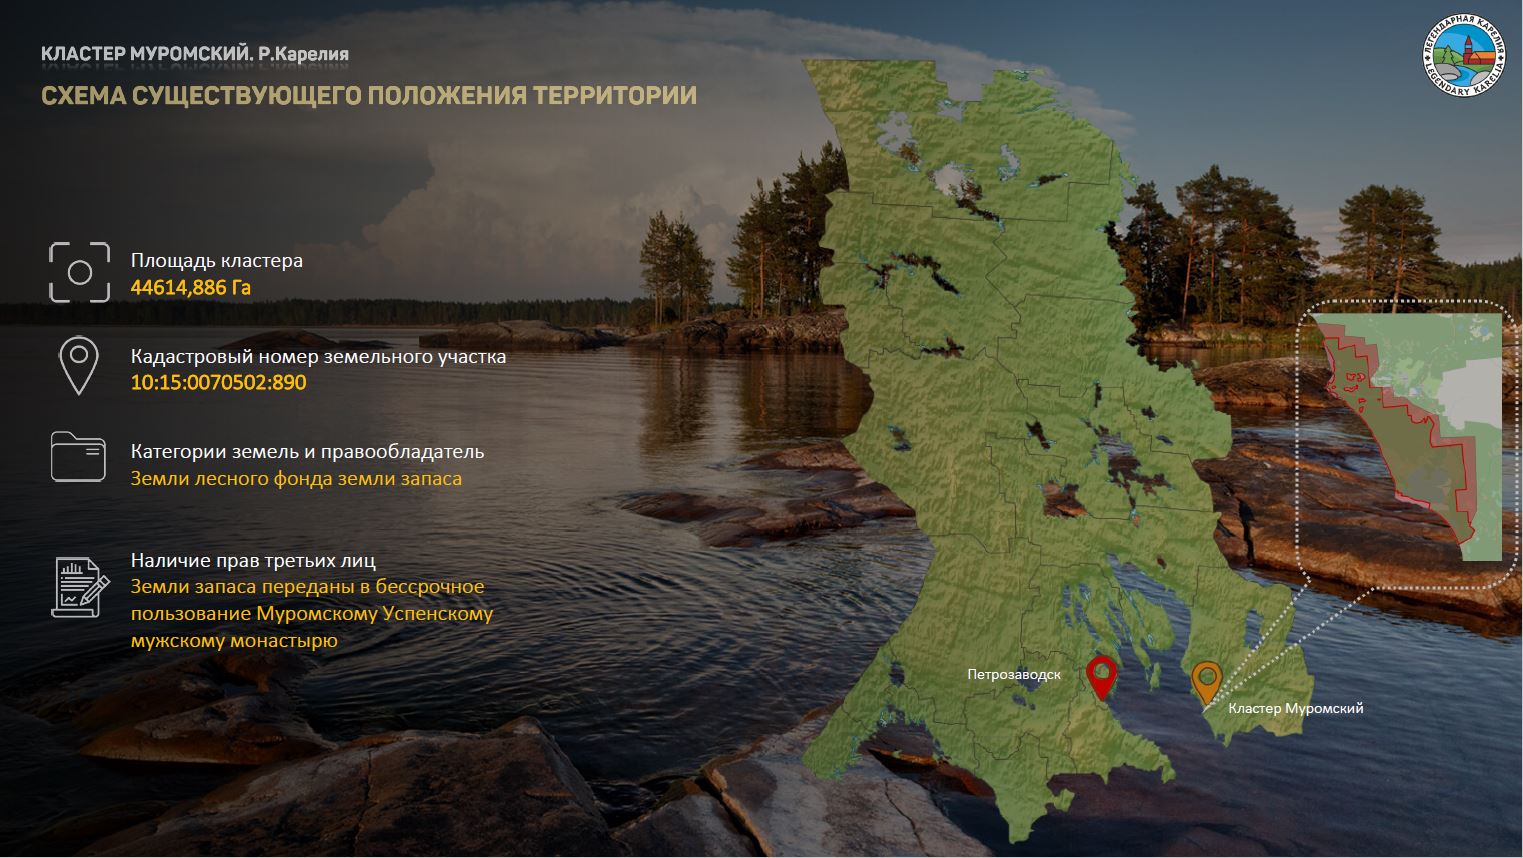 Объект в Карелии вошел в пятерку территорий перспективного развития экотуризма